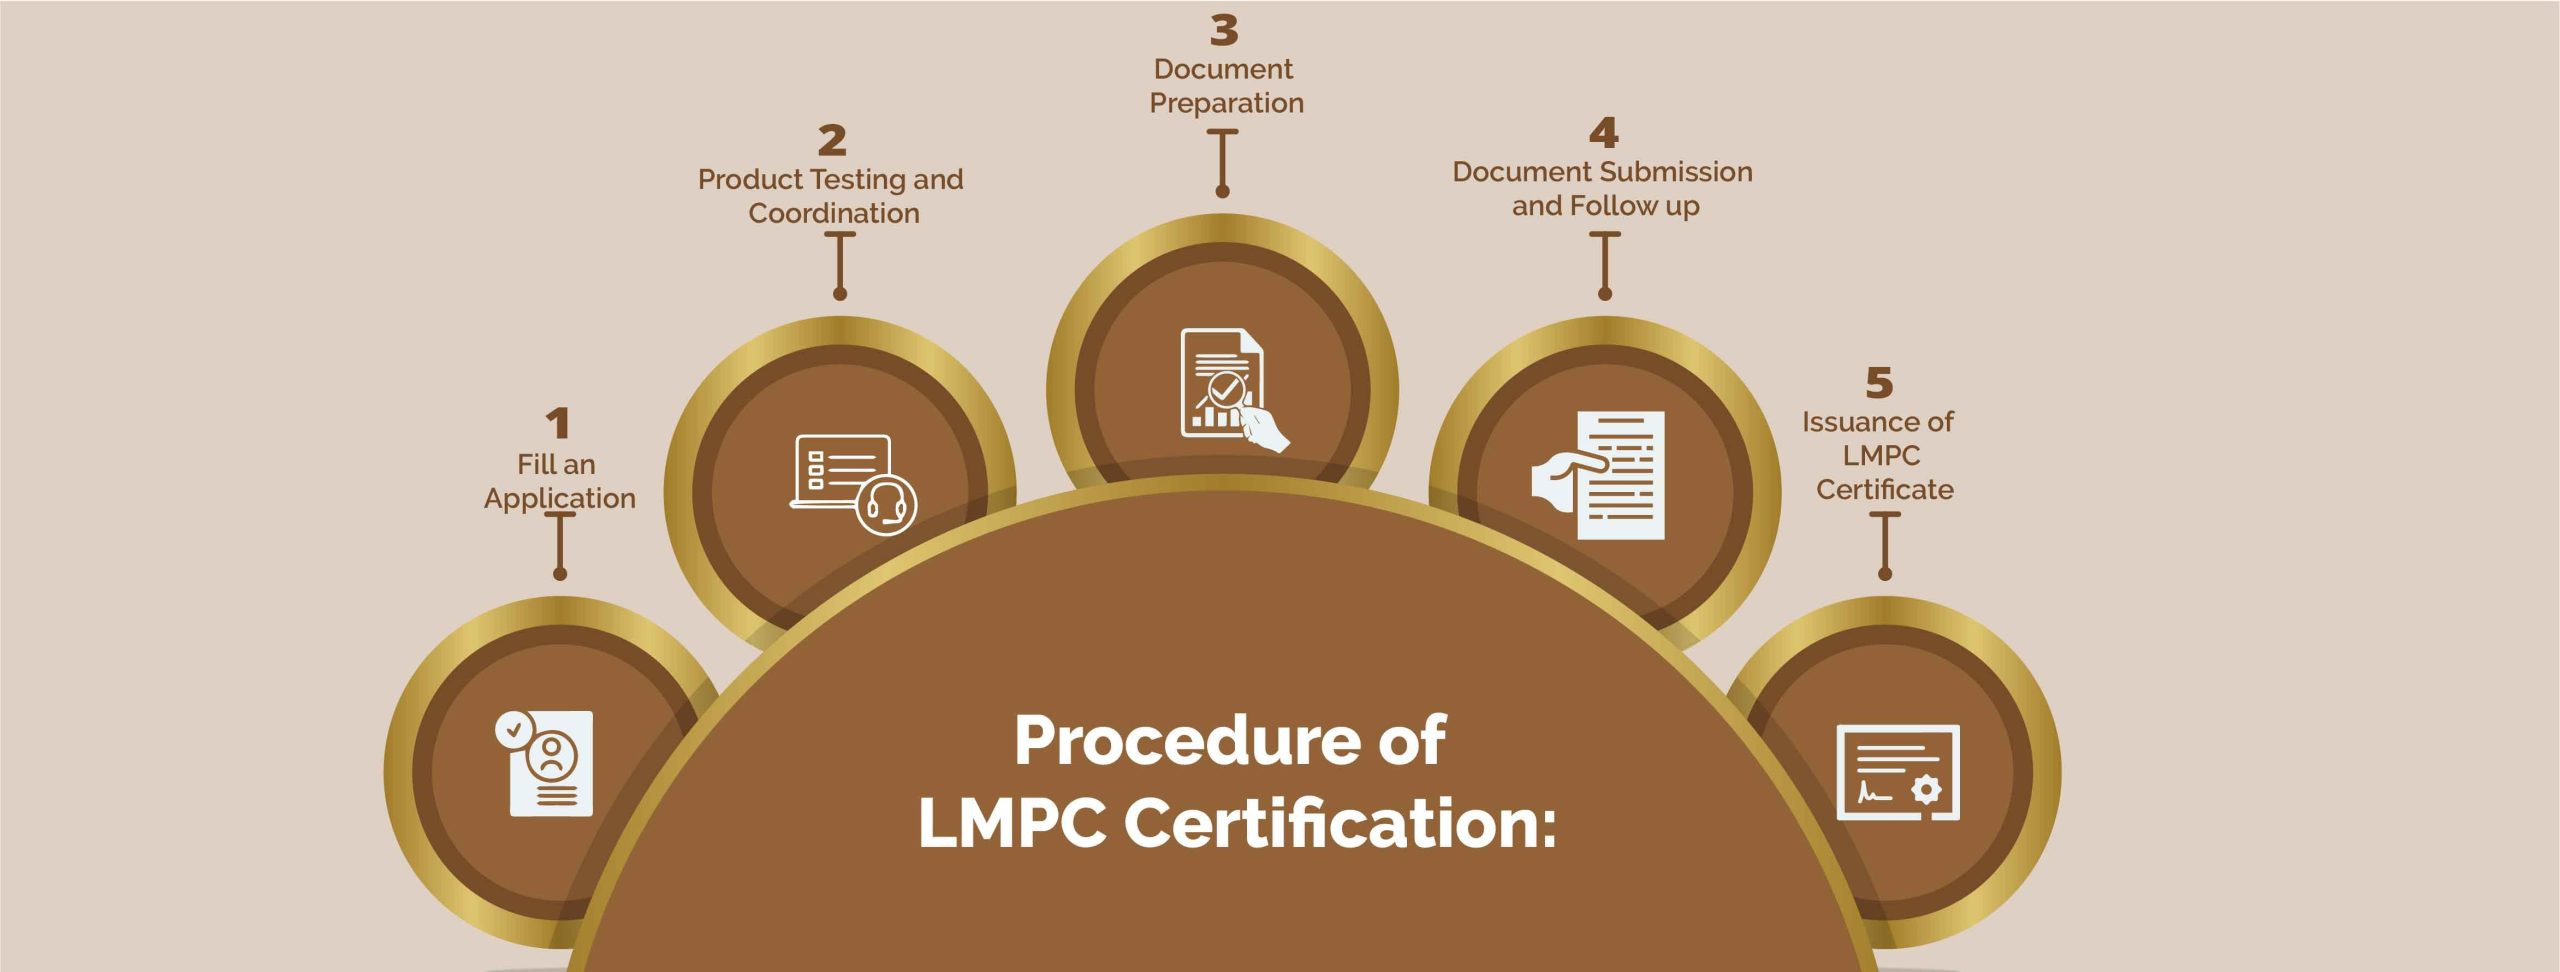 PROCEDURE OF LMPC CERTIFICATION